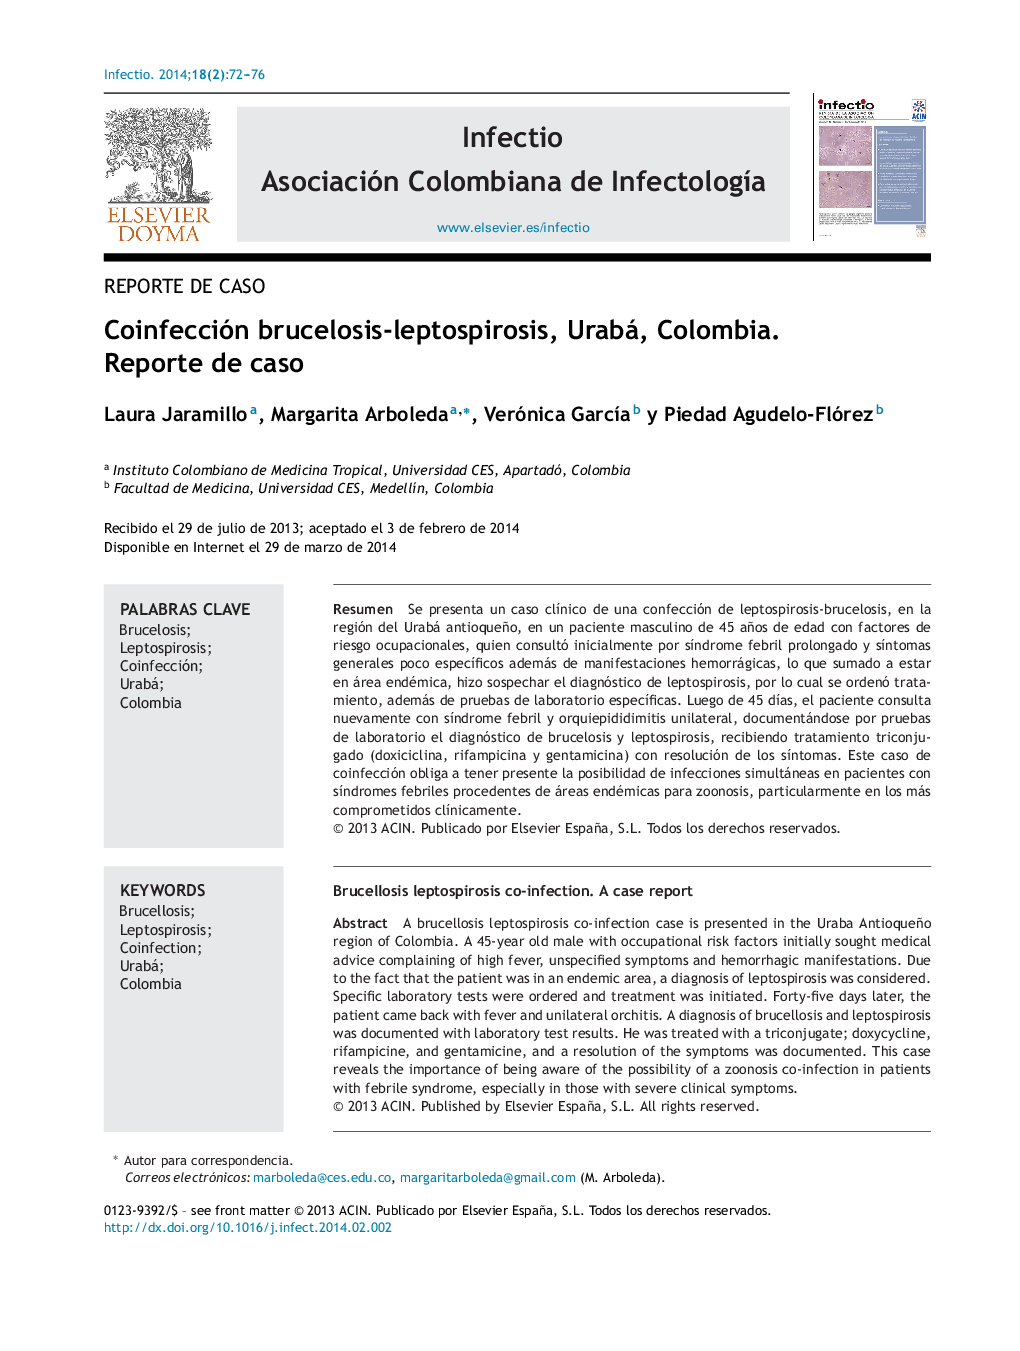 Coinfección brucelosis-leptospirosis, Urabá, Colombia. Reporte de caso